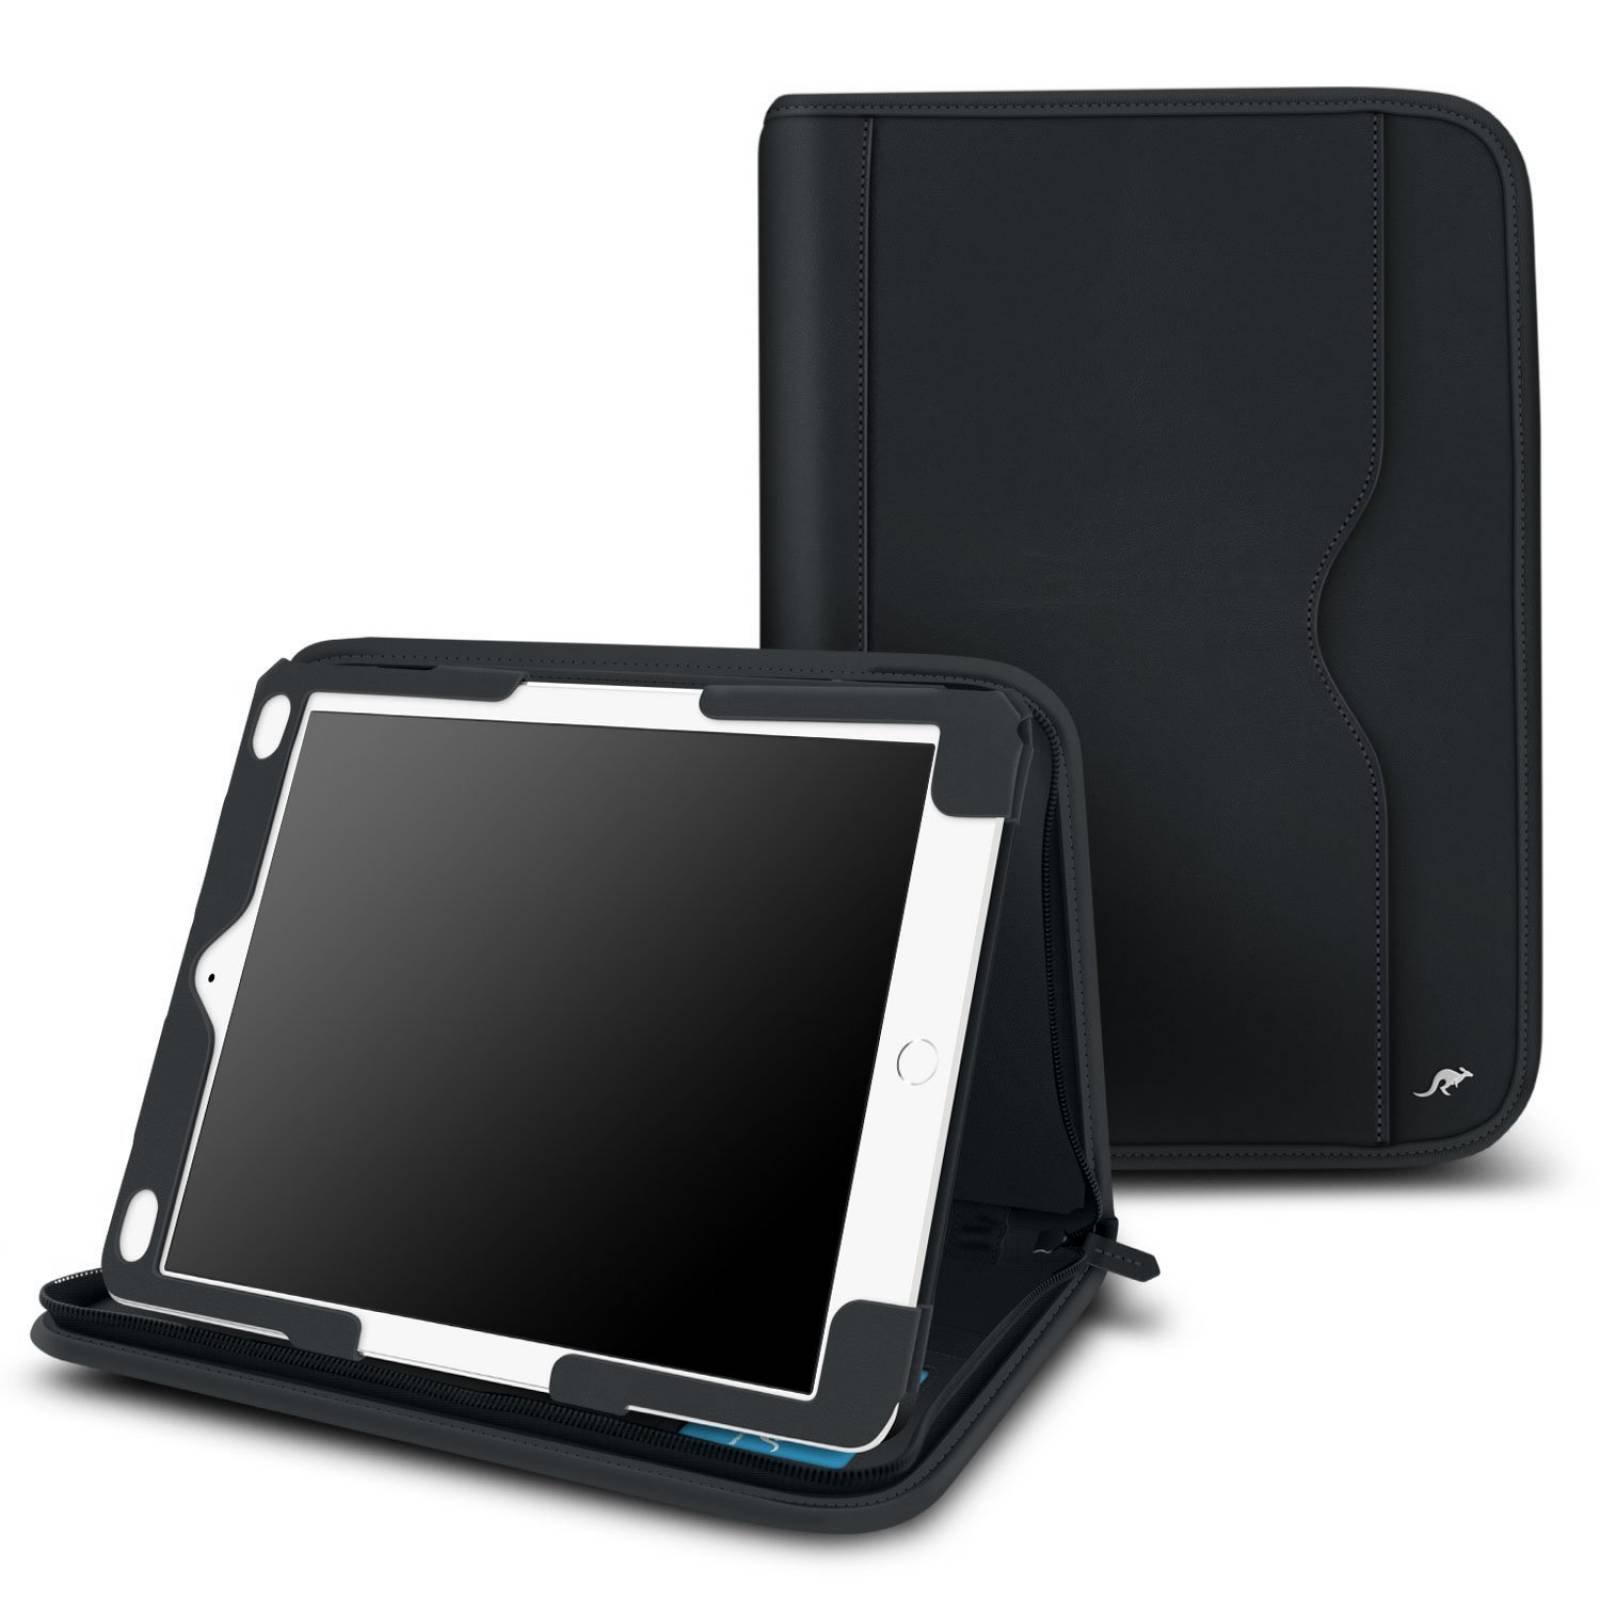 B:iPad Pro 9.7 funda, rooCASE [nueva versión] Ejecutivo -Negro